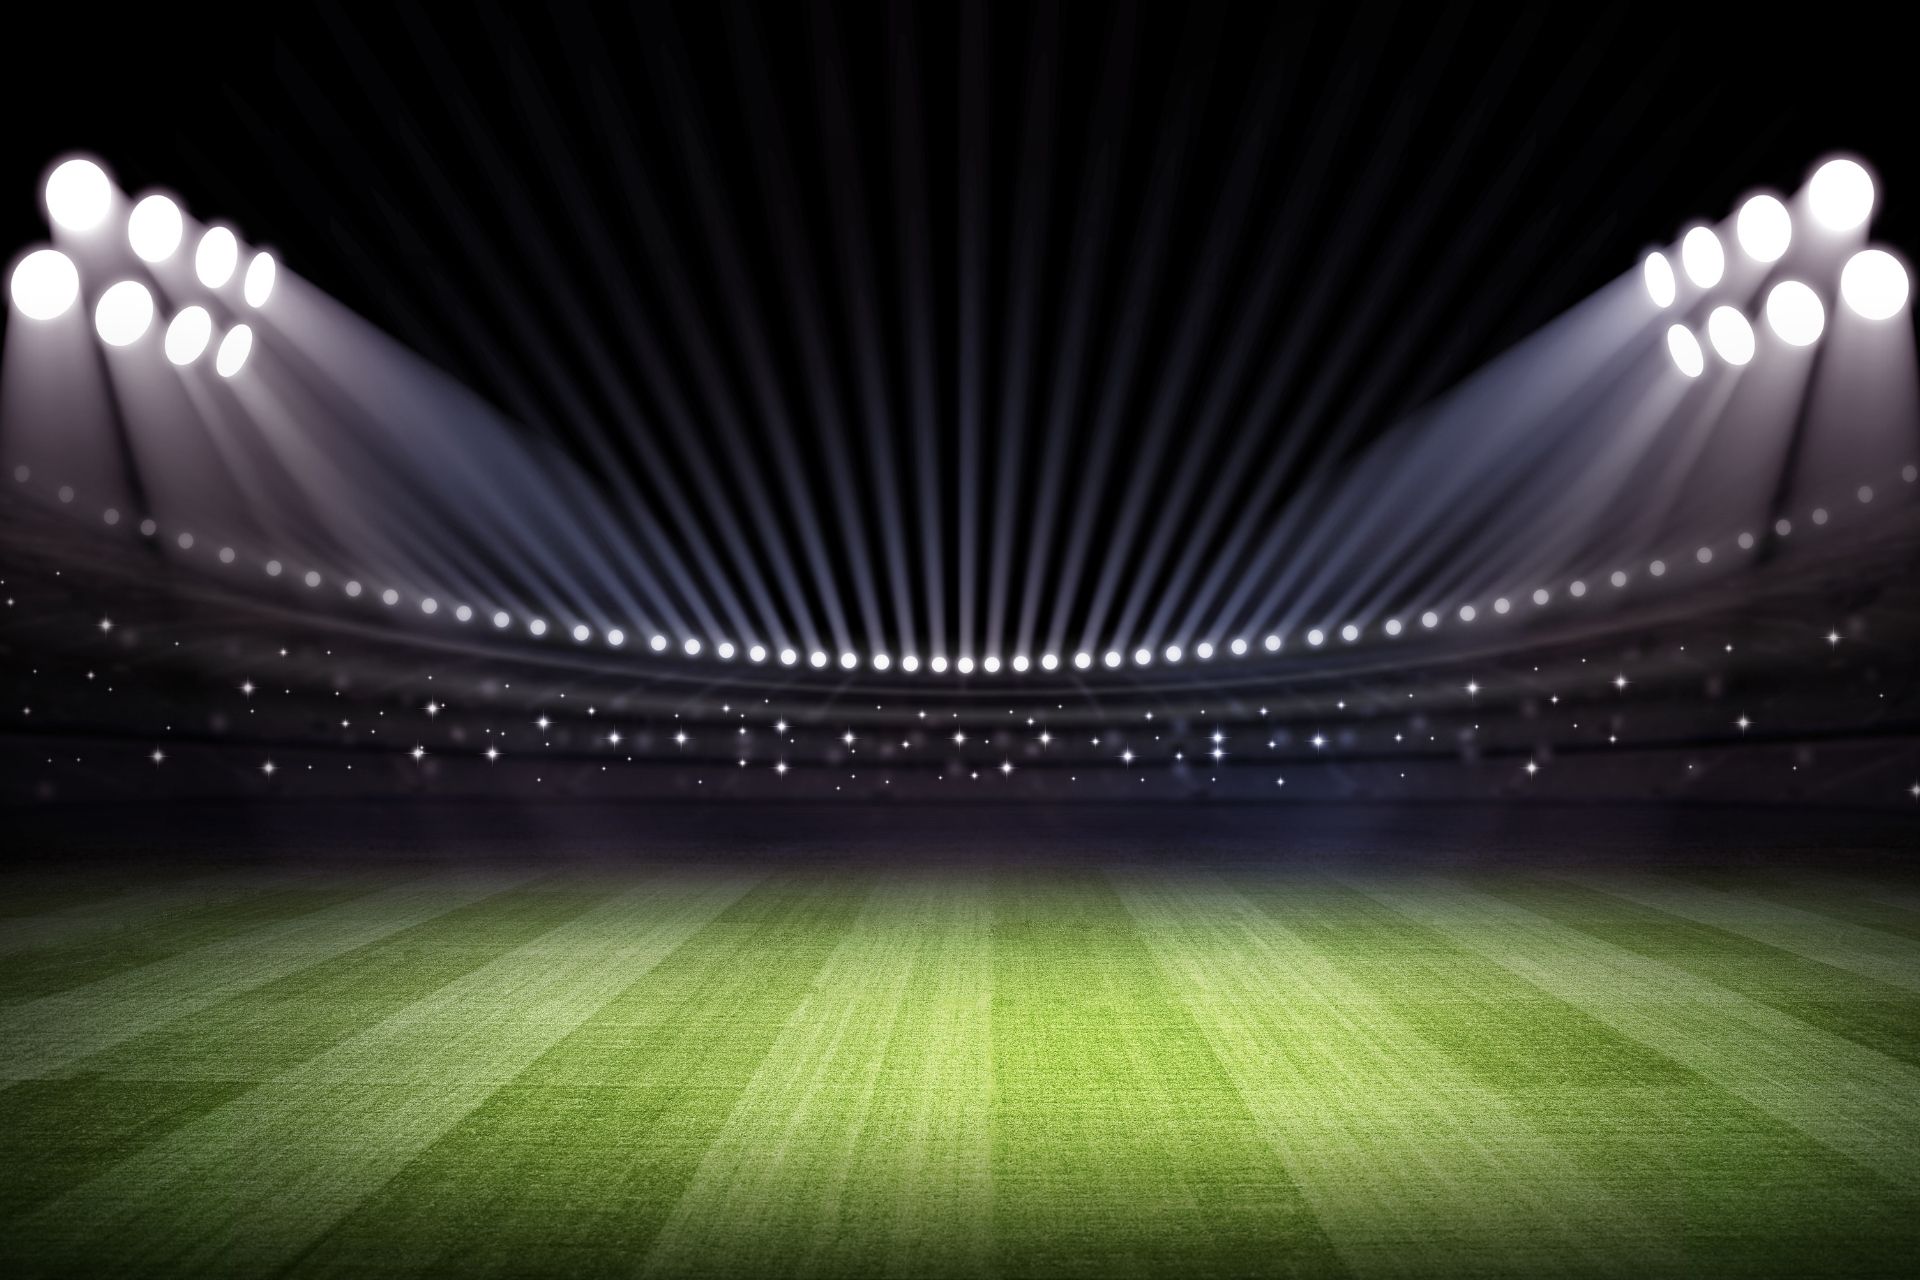 Na stadionie Stadio Comunale Luigi Ferraris dnia 2022-05-06 19:00 odbył się mecz między Genoa oraz Juventus - 2-1